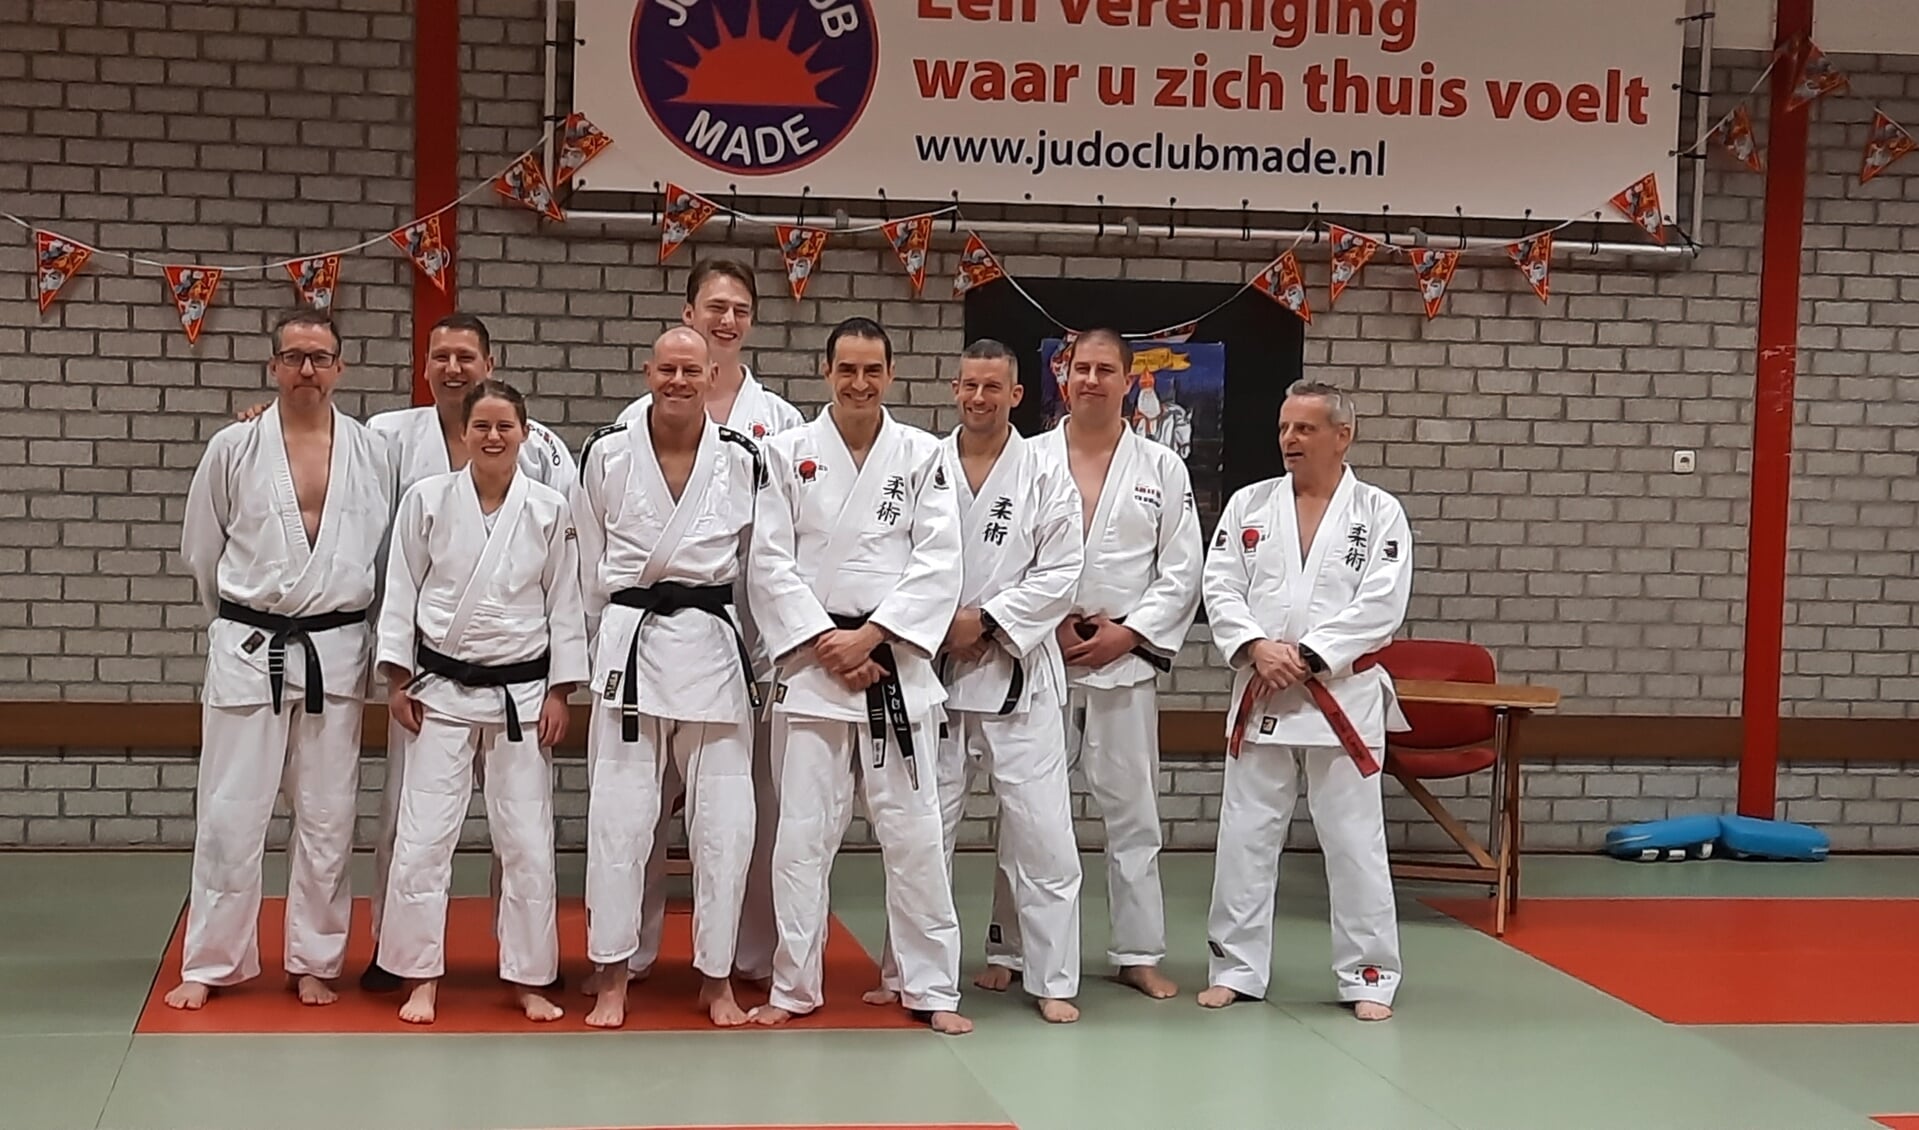 Twee leden van jiu jitsu vereniging Kihon uit Cuijk zijn afgelopen week geslaagd voor de tweede en derde dan jiu-jitsu